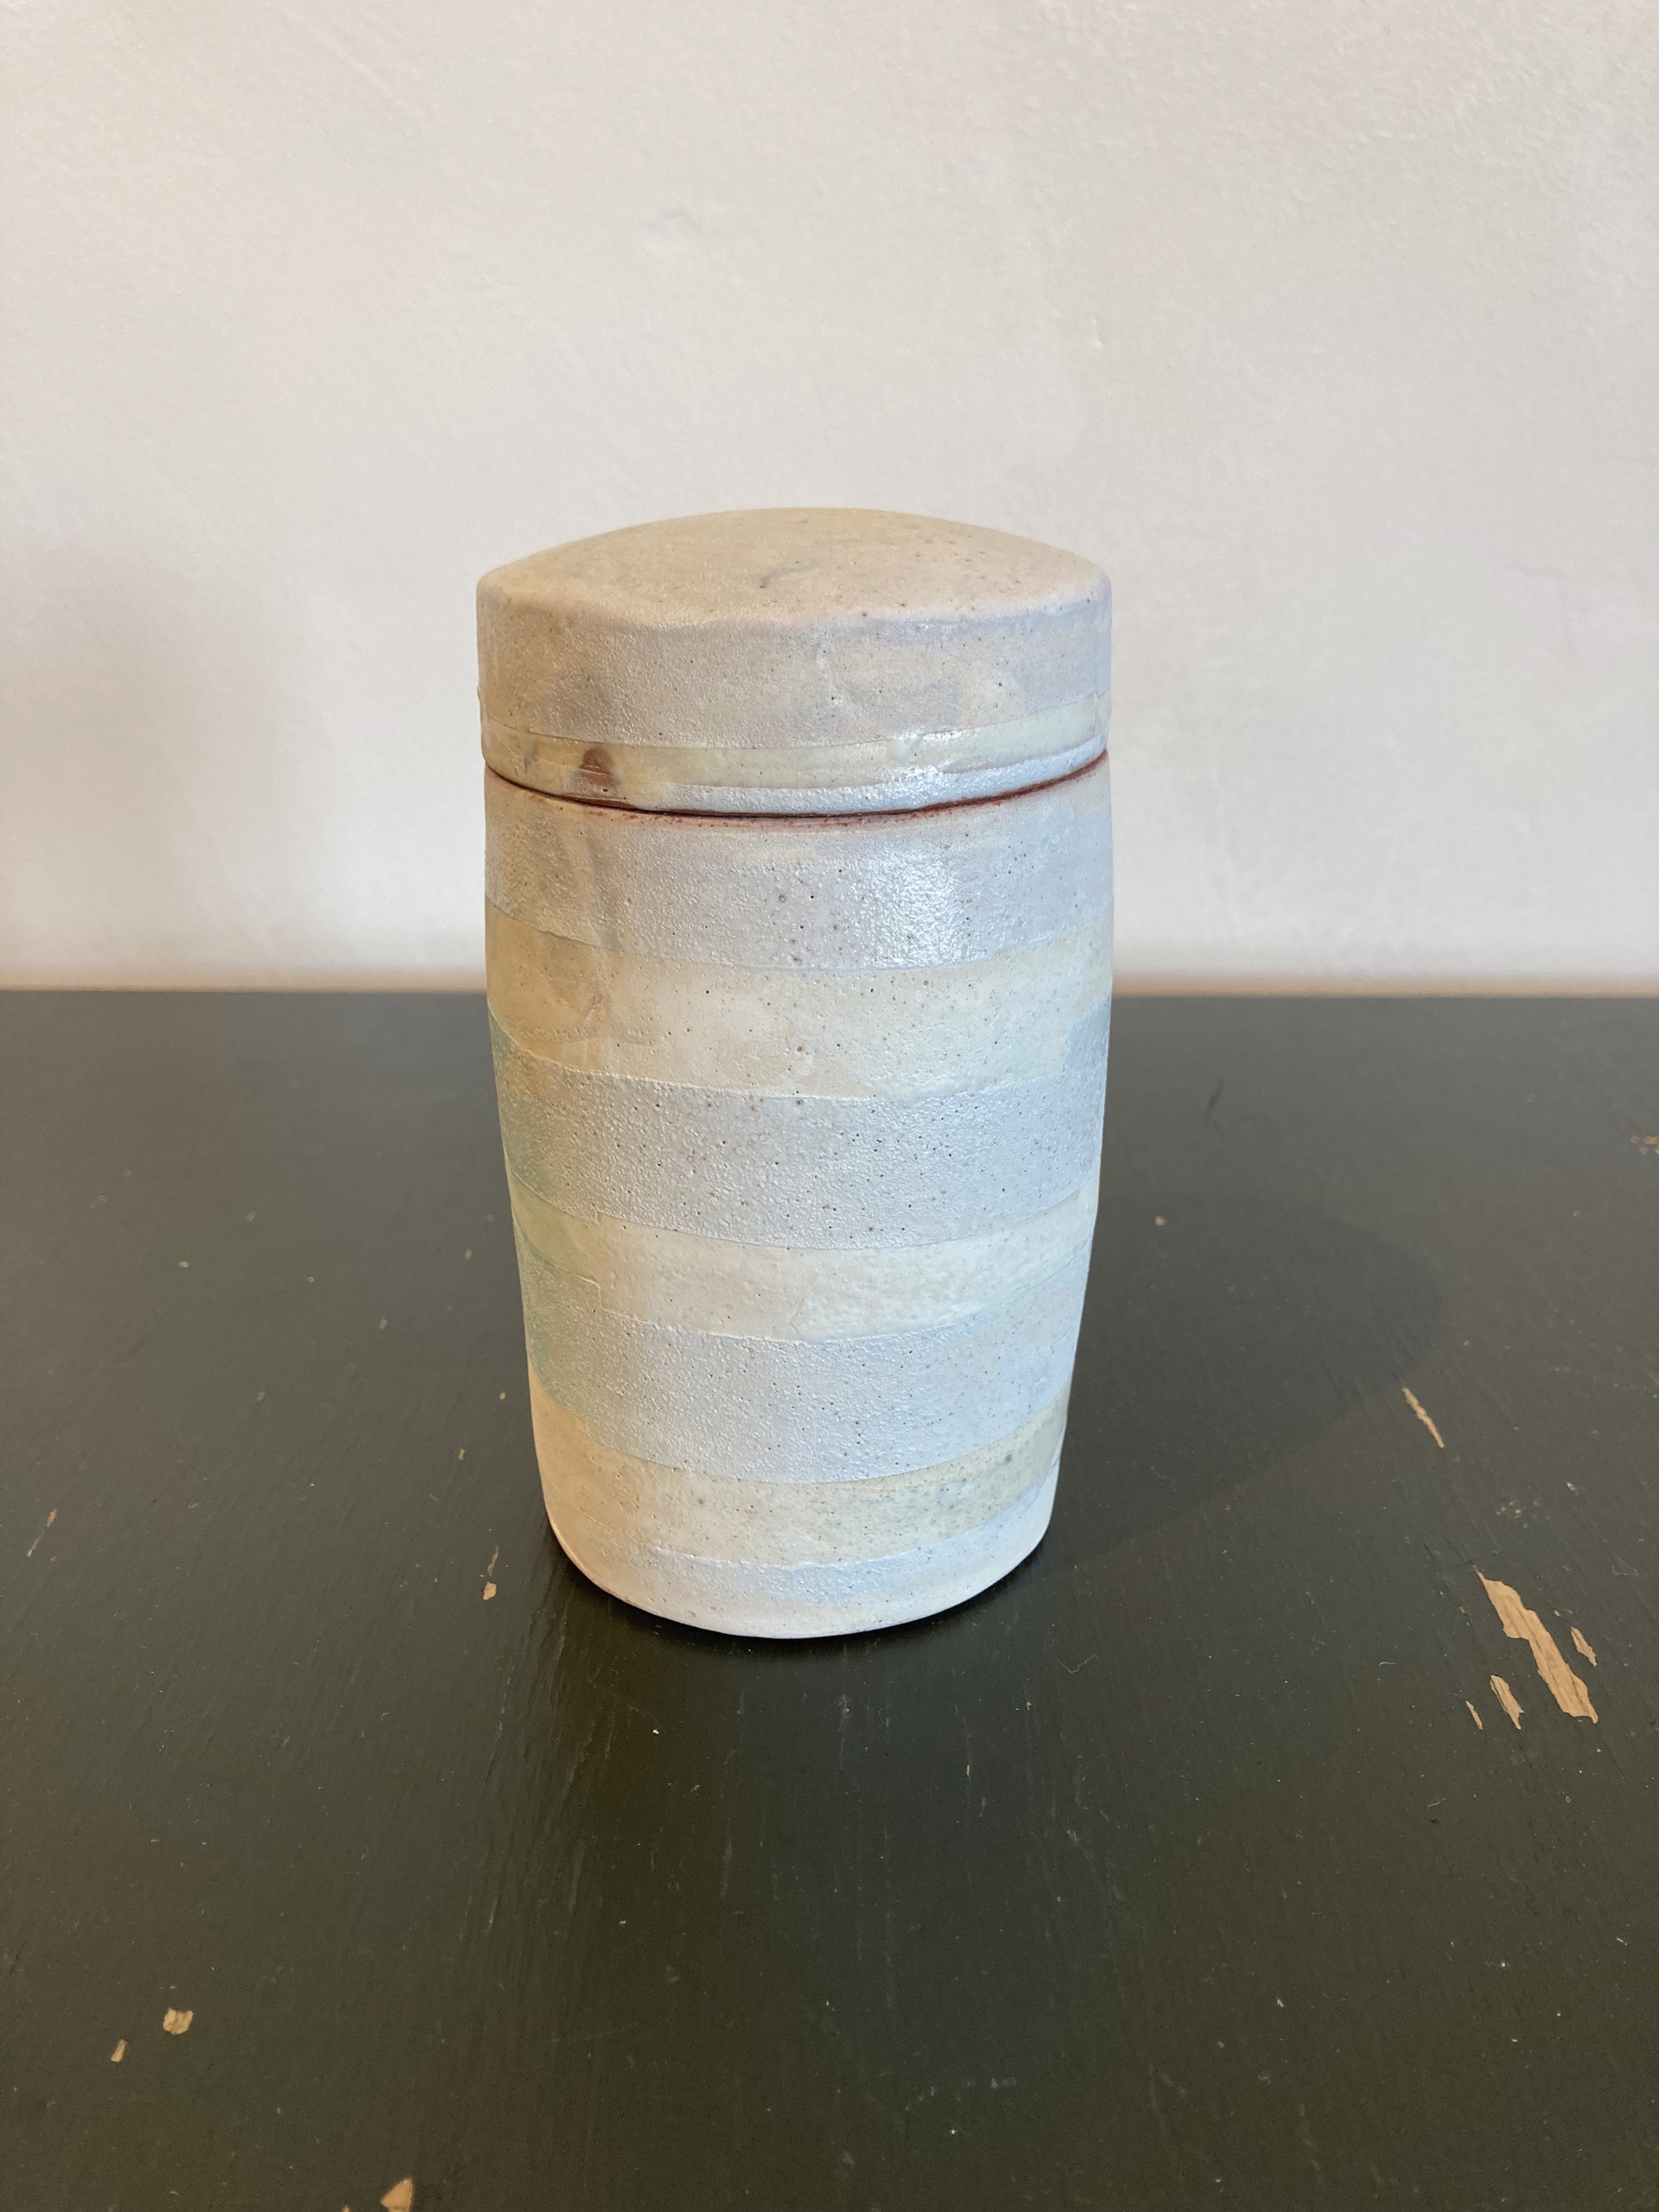 Lidded Jar by Maggie Jaszczak